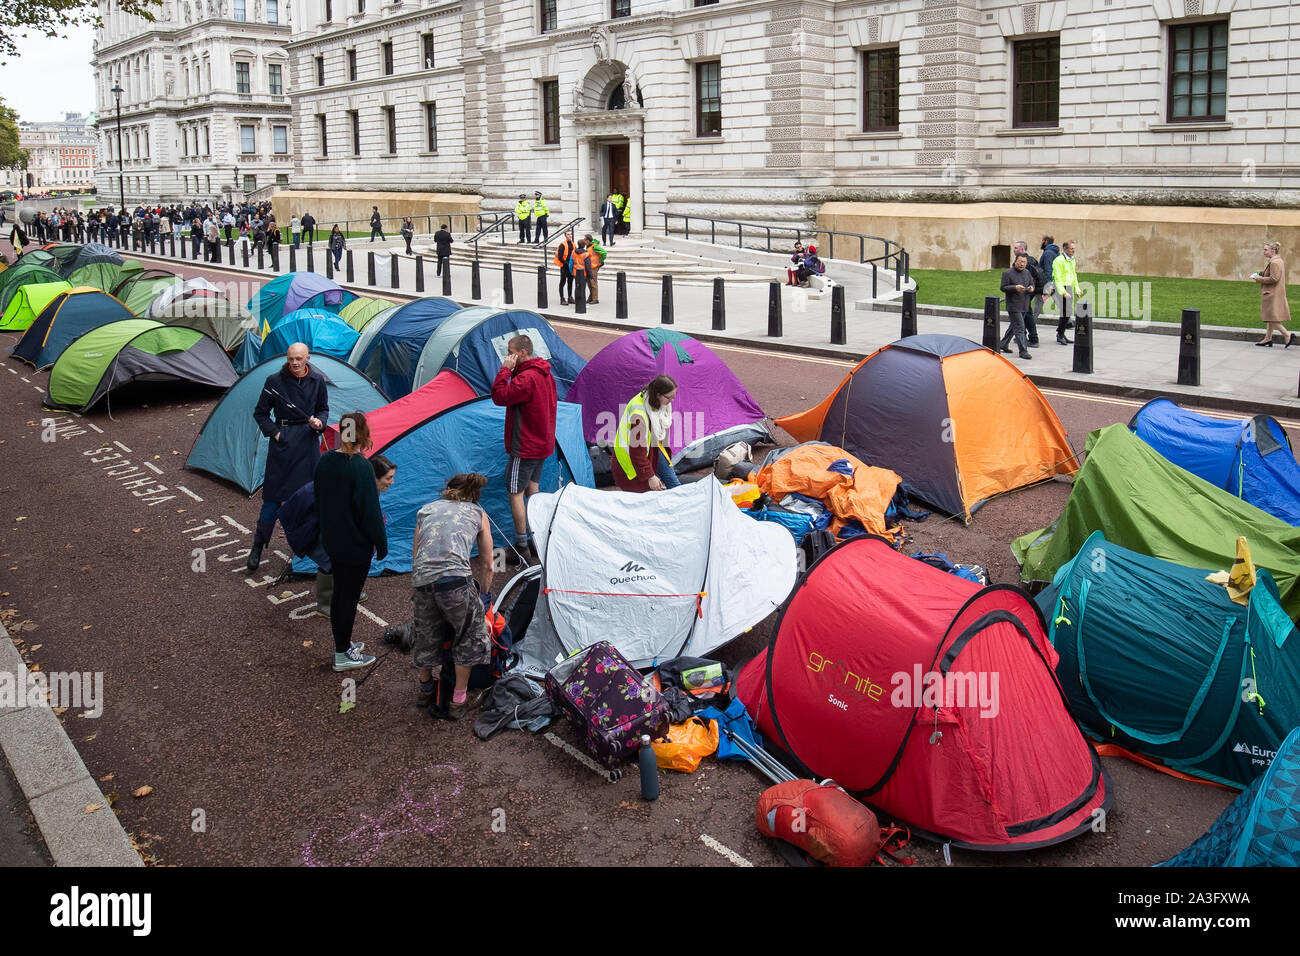 Zelte, Horse Guards Road, außerhalb des Treasury Building, während ein Aussterben Rebellion (XR) Protest in Westminster, London. Stockfoto